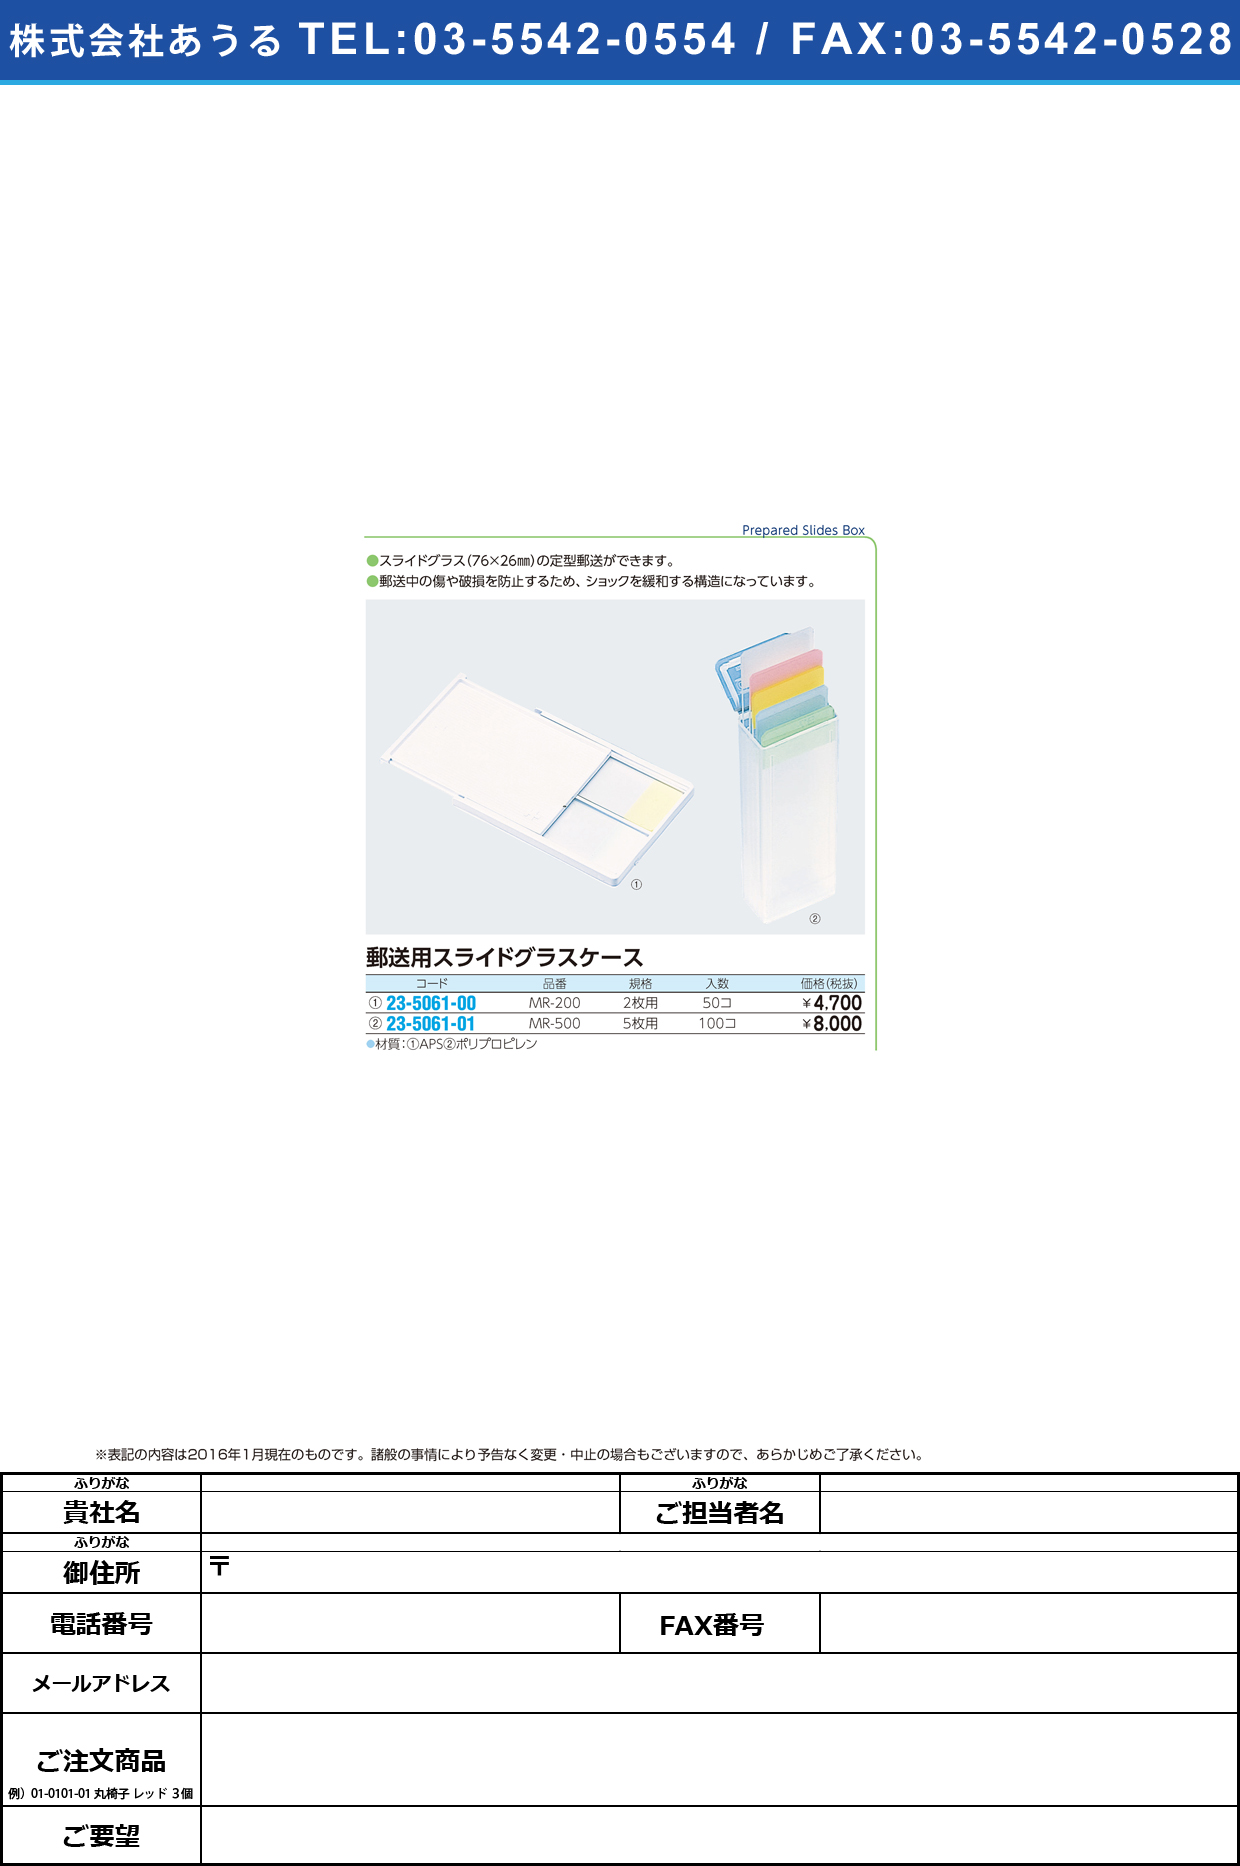 郵送用スライドグラスケース   ﾕｳｿｳﾖｳｽﾗｲﾄﾞｸﾞﾗｽｹｰｽ MR-500(5ﾏｲｲﾘX100ｲﾘ)【1箱単位】(23-5061-01)